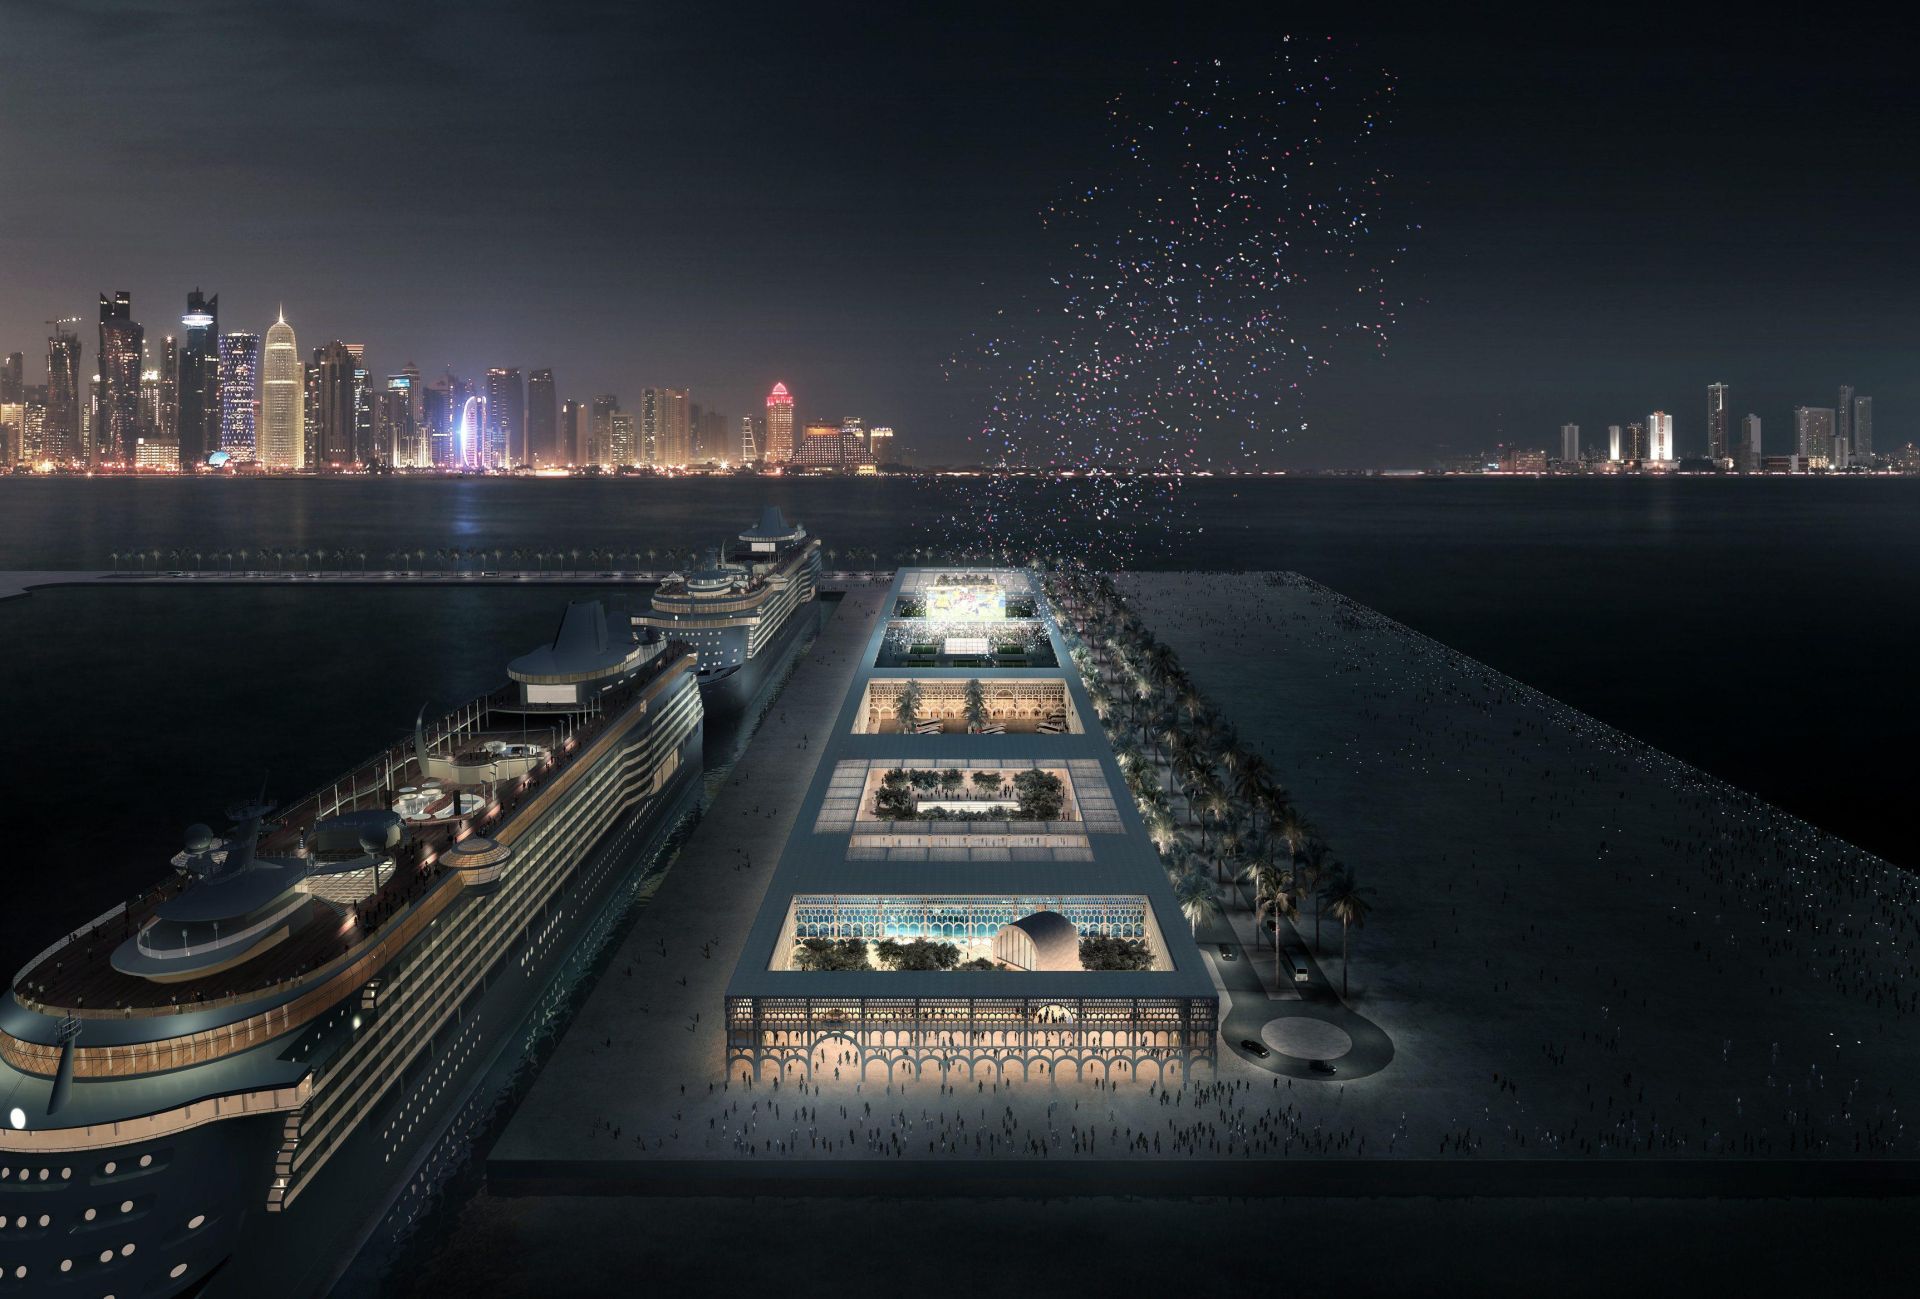 grand cruise terminal doha